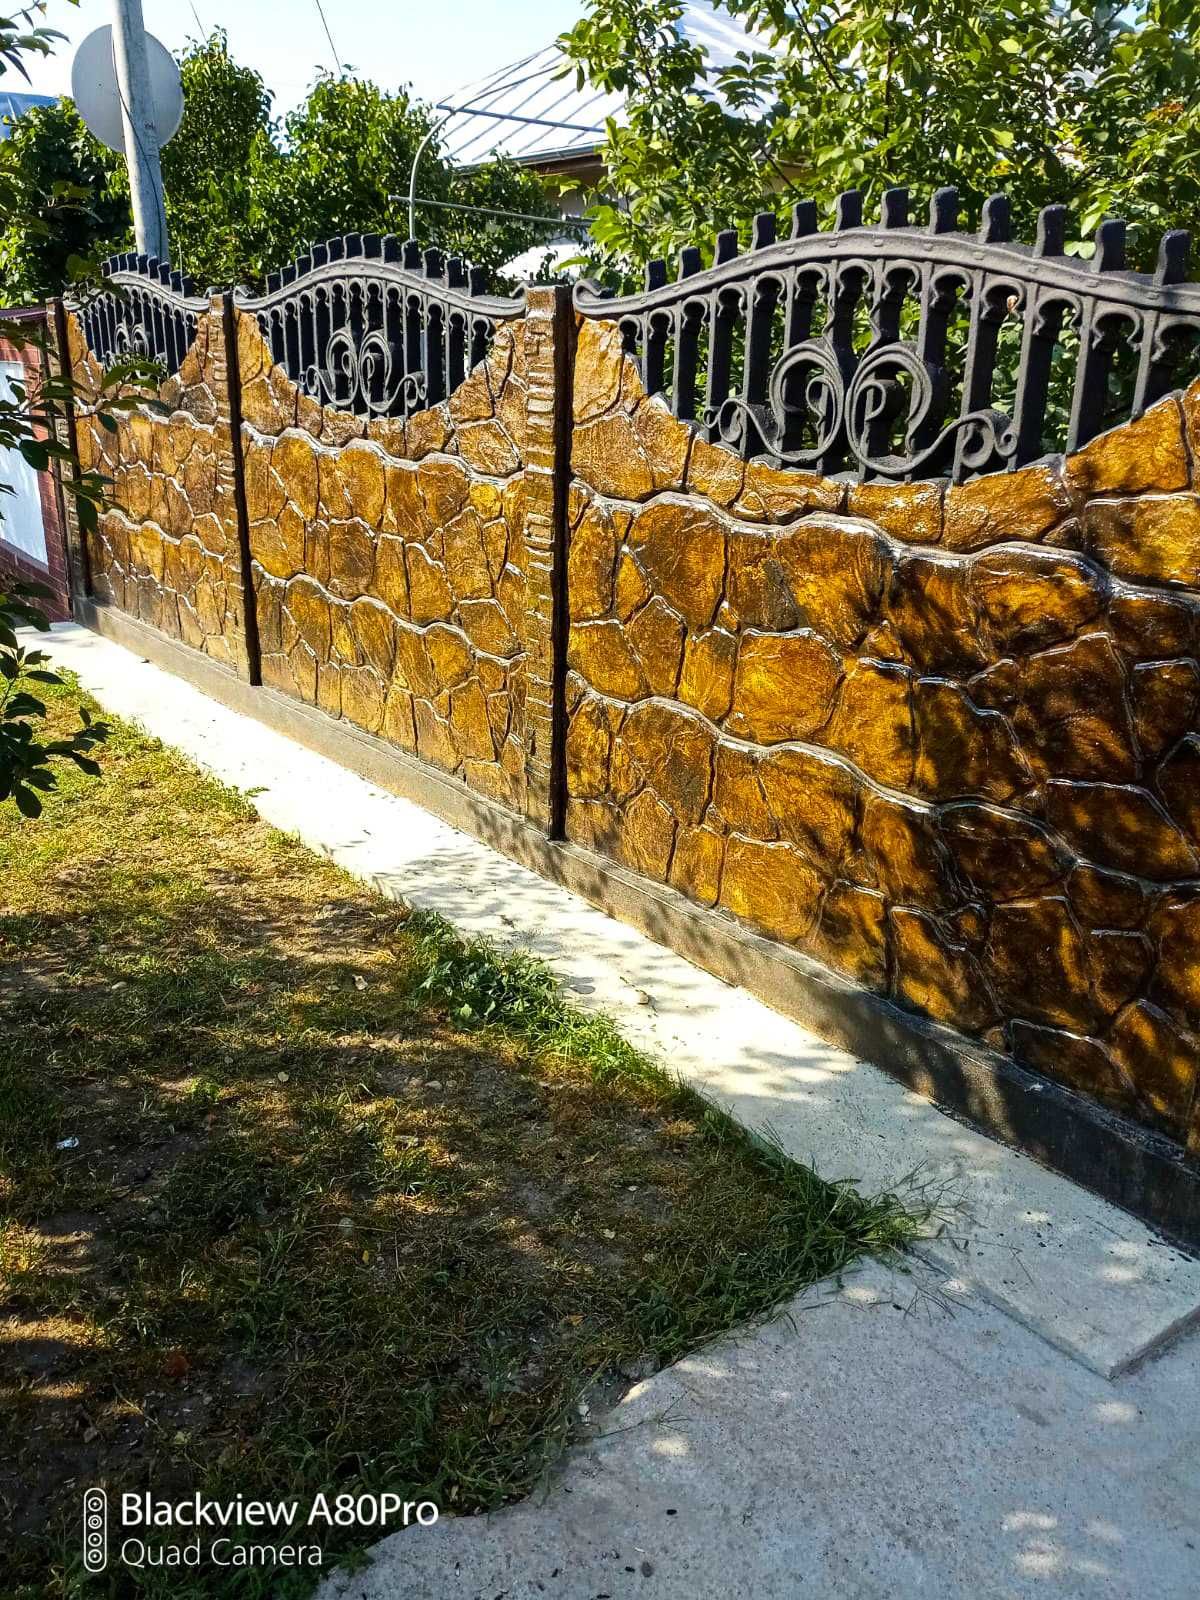 Gard din Beton ARMAT pentru imprejmuiri